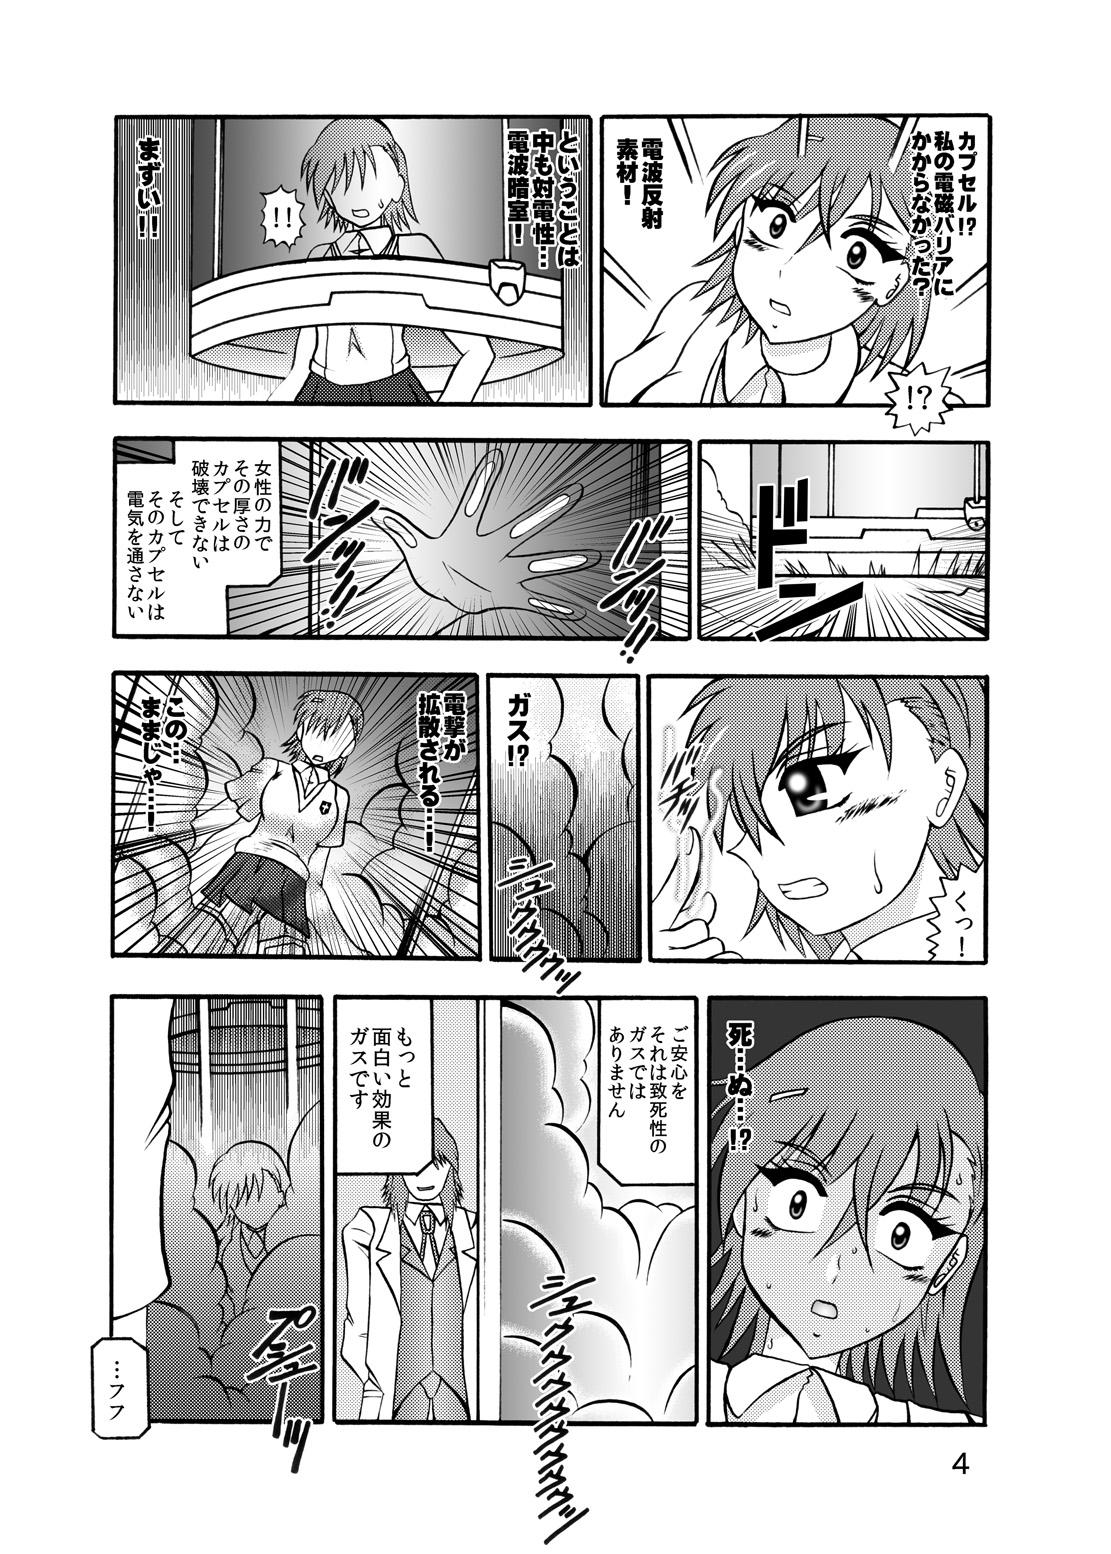 Dom Inyoku Kaizou: Misaka Mikoto - Toaru kagaku no railgun Nerd - Page 2